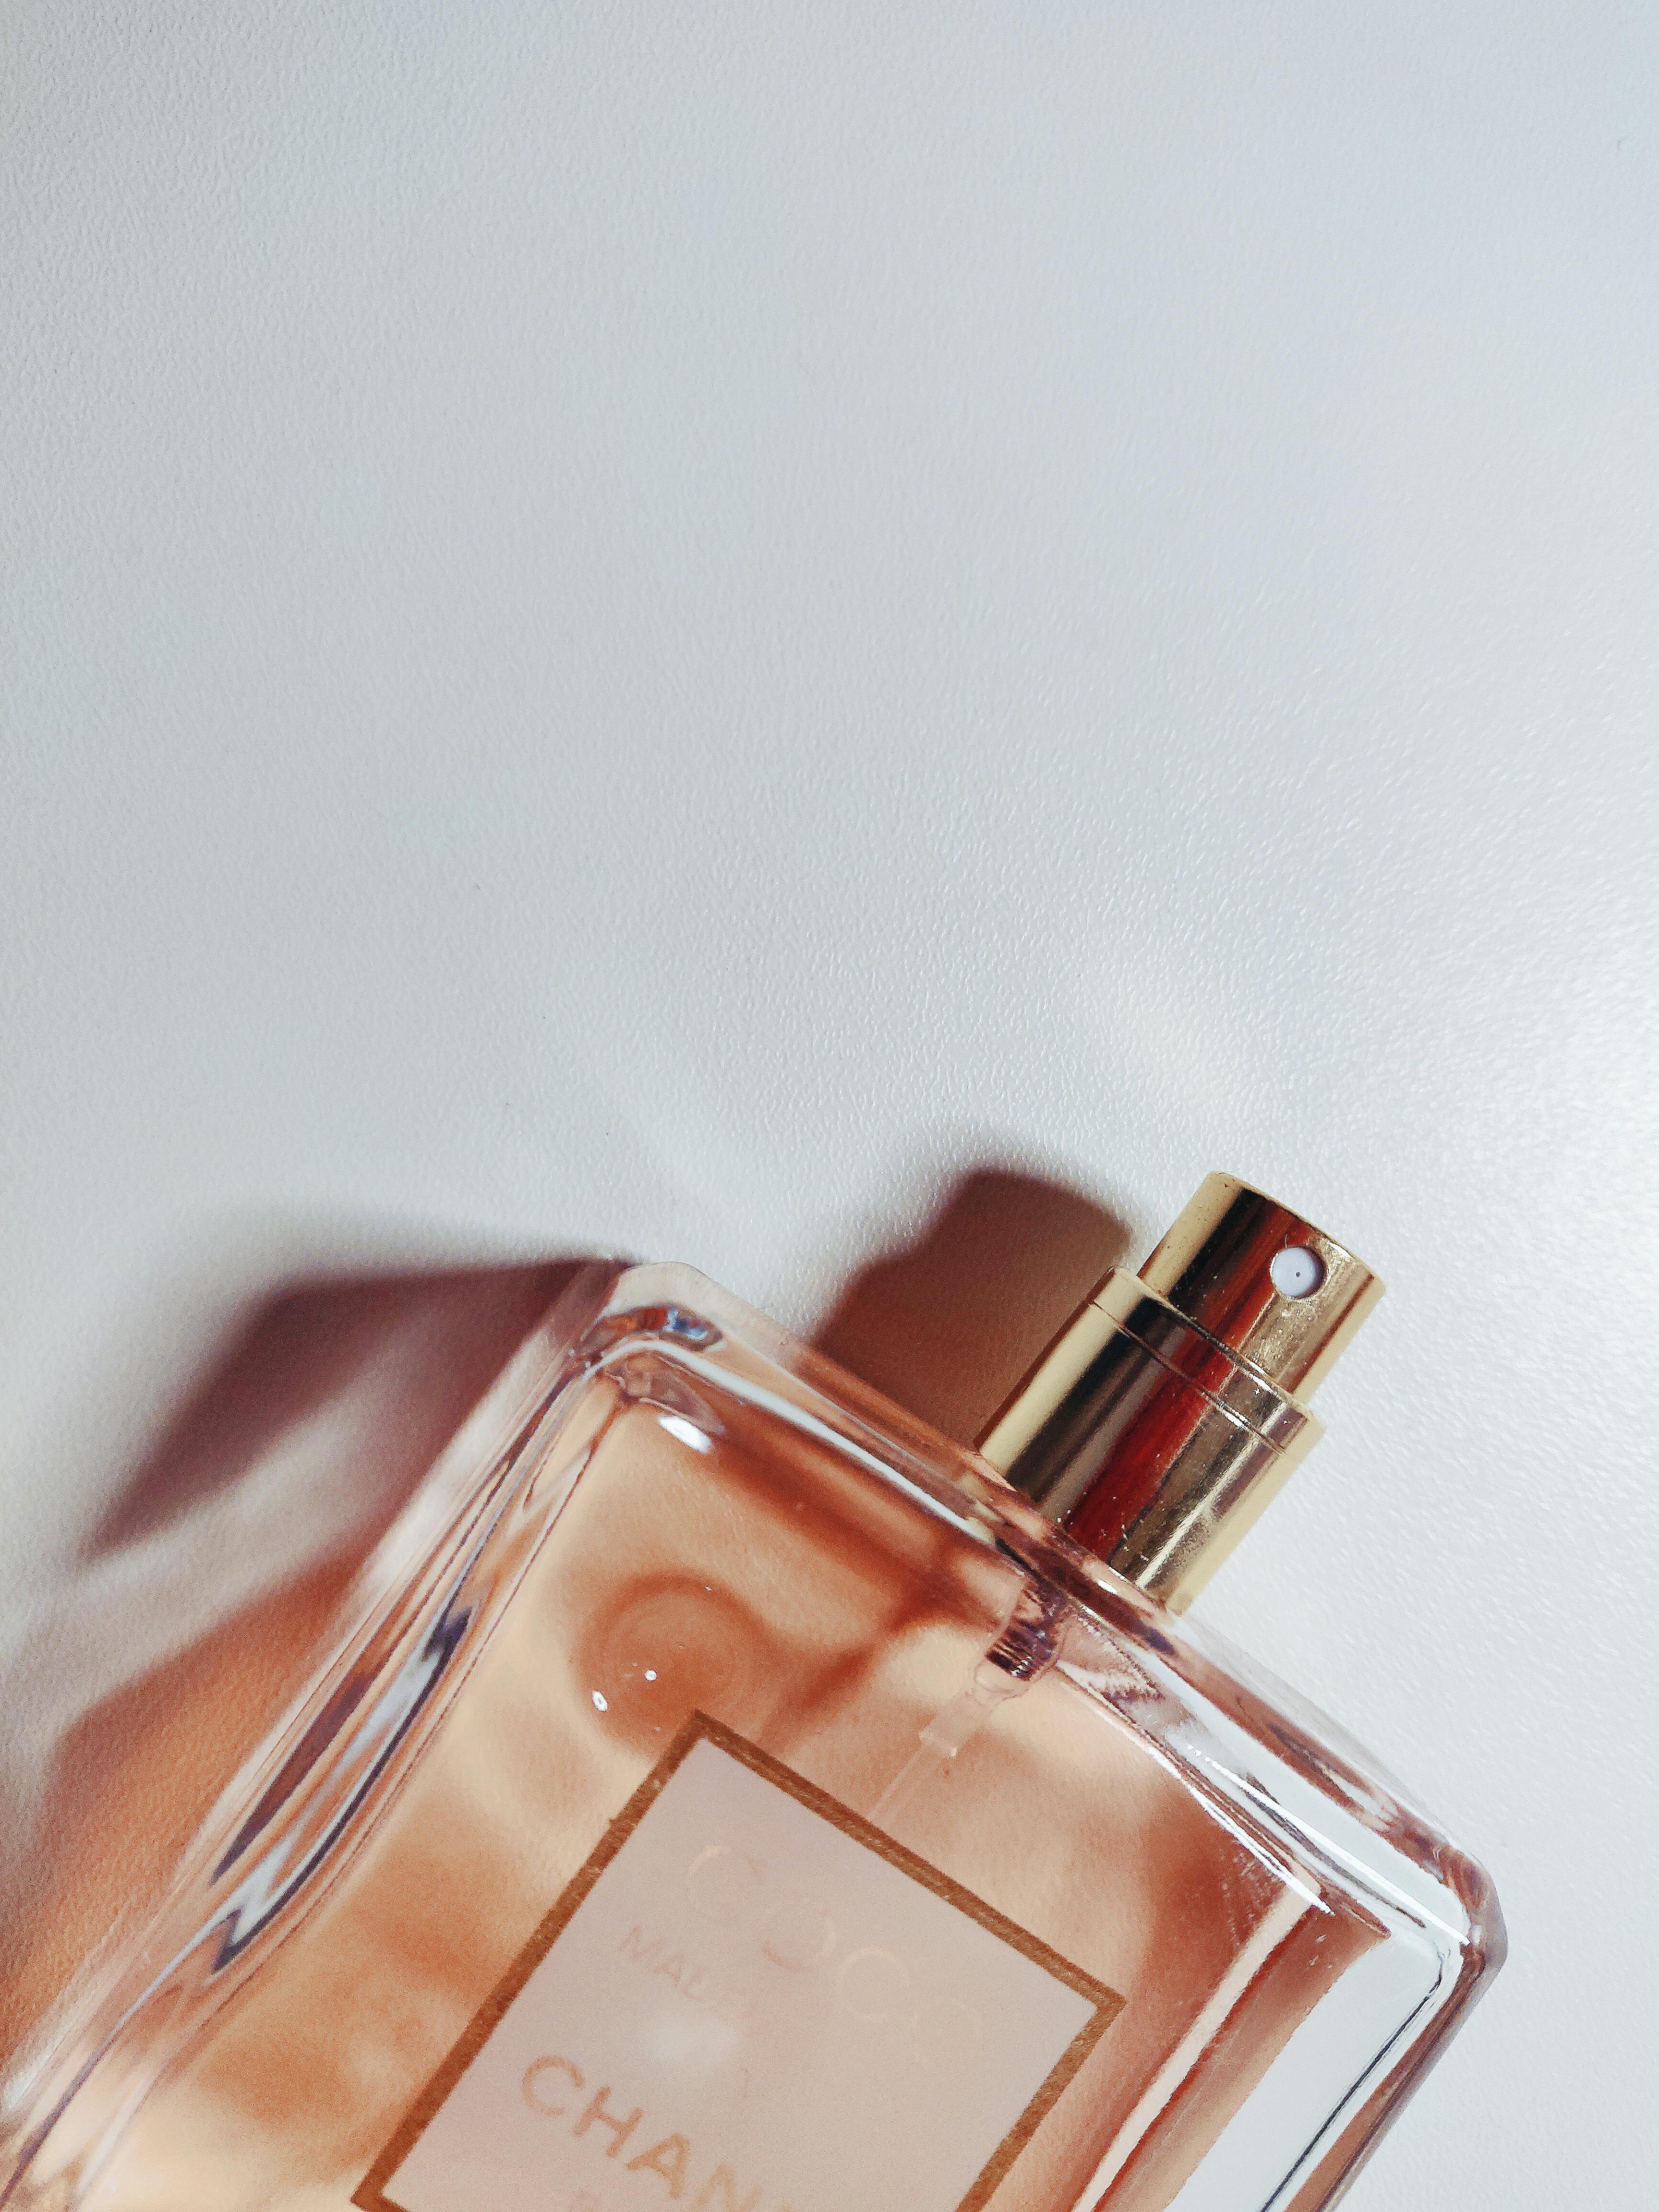 Close-Up Photo of Perfume Bottle · Free Stock Photo